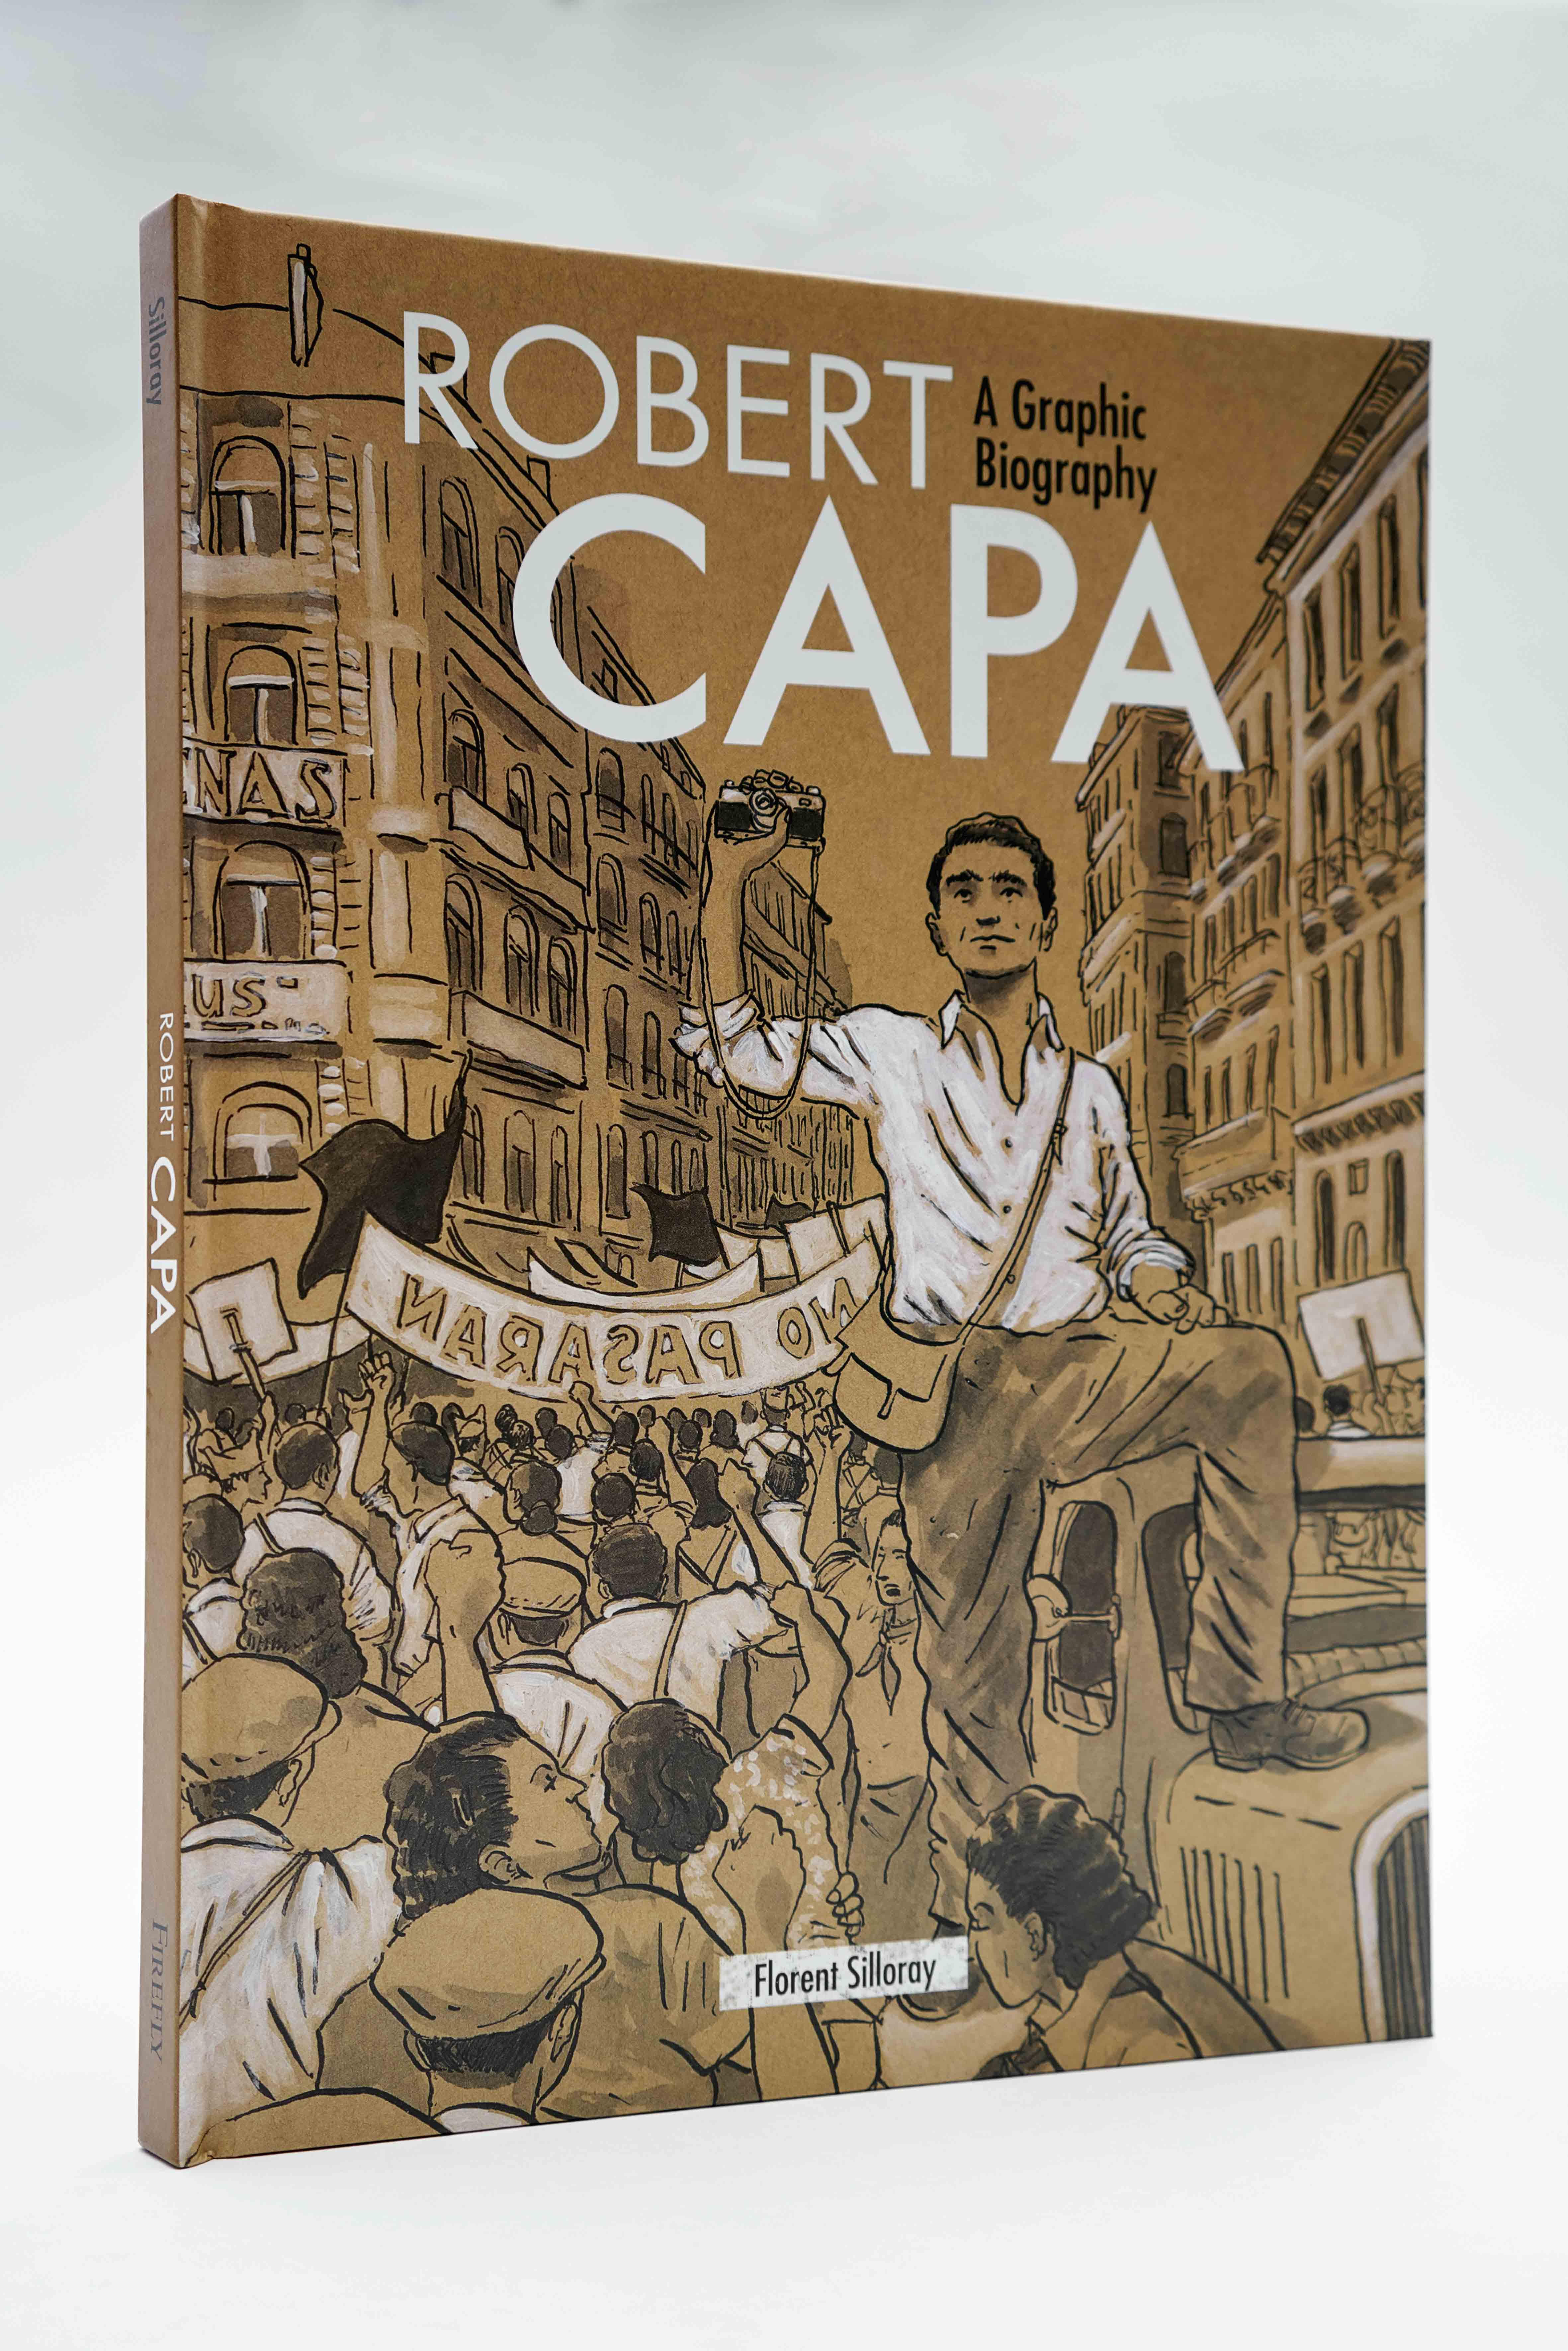 Robert Capa: A Graphic Biography<br />Kiadó: Firefly Books Ltd. 2017<br />Oldalszám: 88 oldal<br />Kötés: keménytáblás<br />ISBN: 9781770859289<br />Nyelv: angol